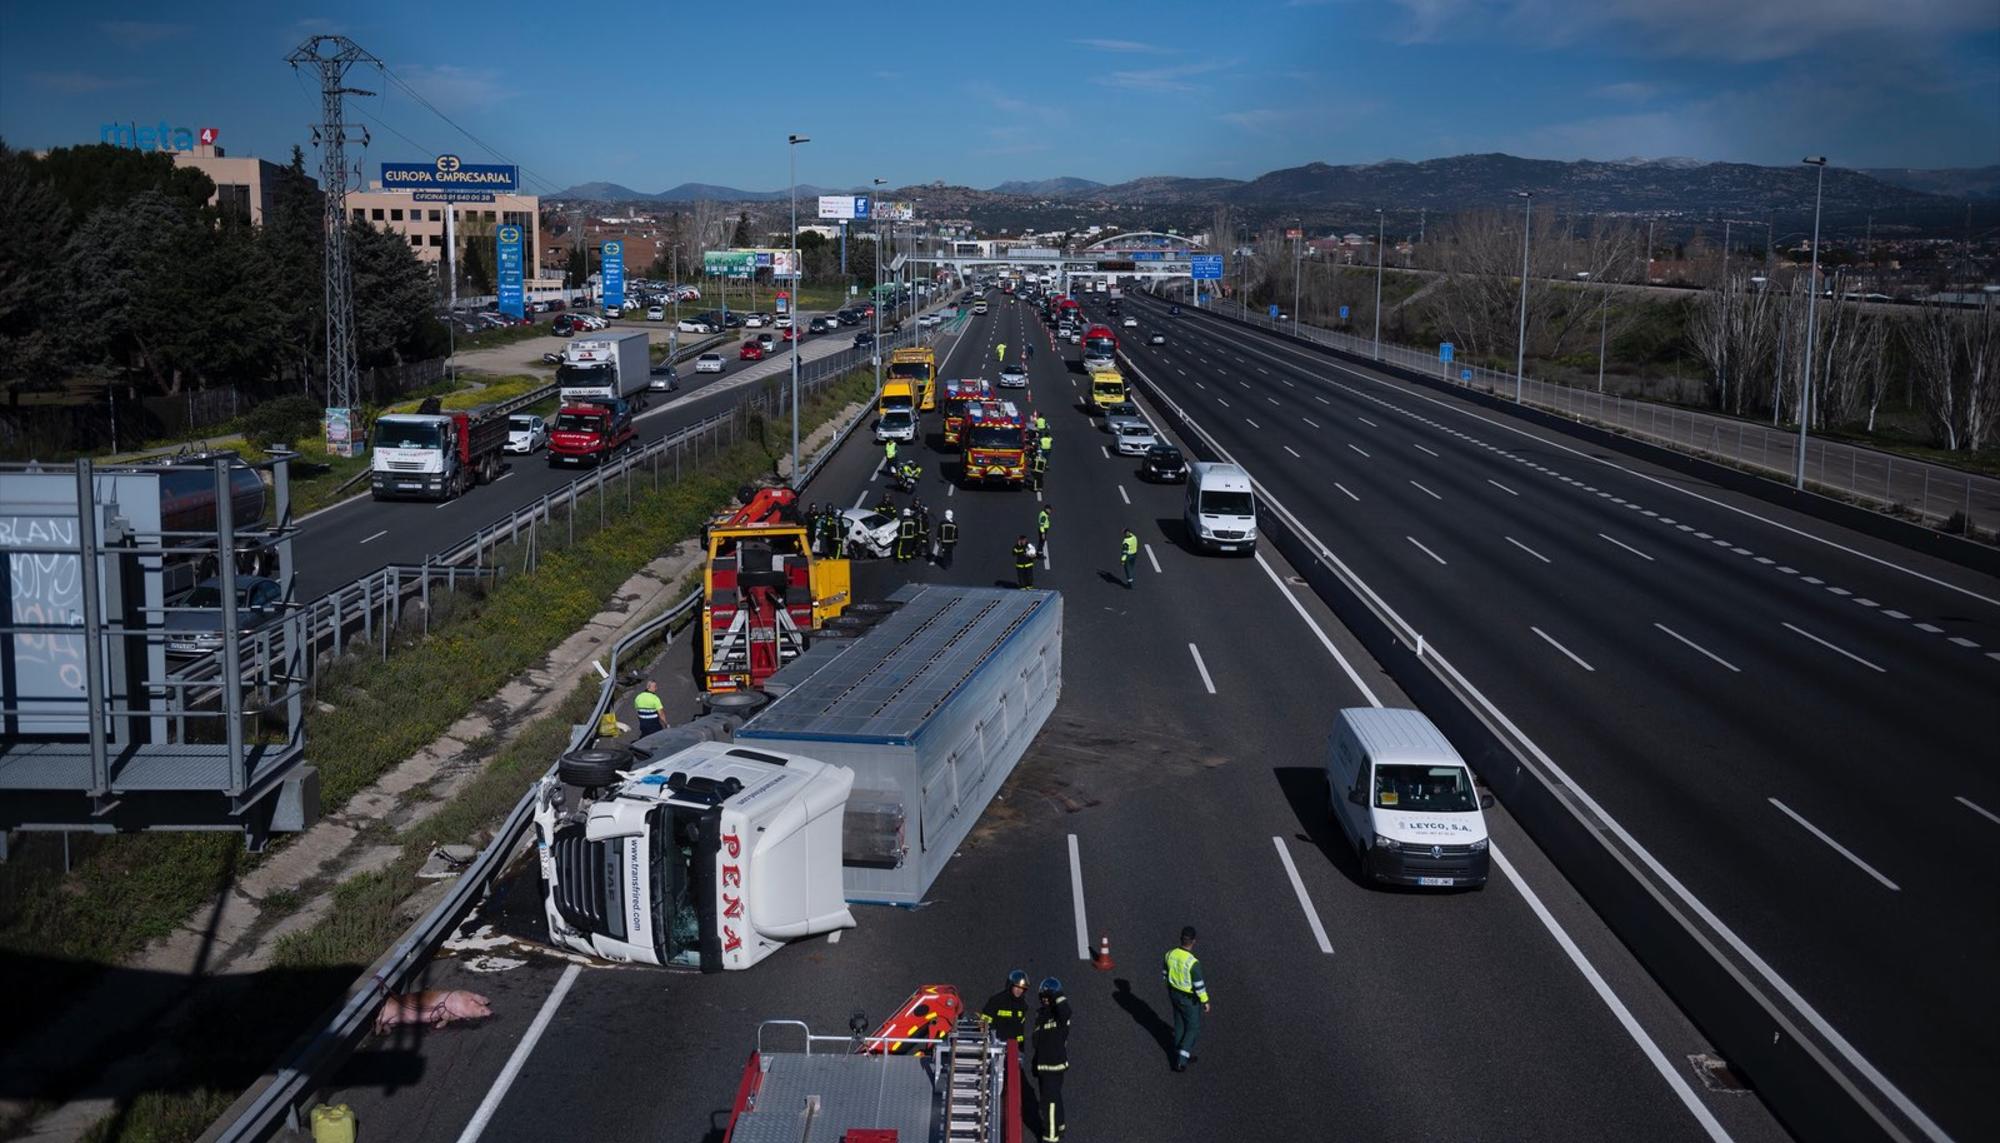 Camión cargado con cerdos en la A6 (Madrid) | Aitor Garmendia | Tras los Muros